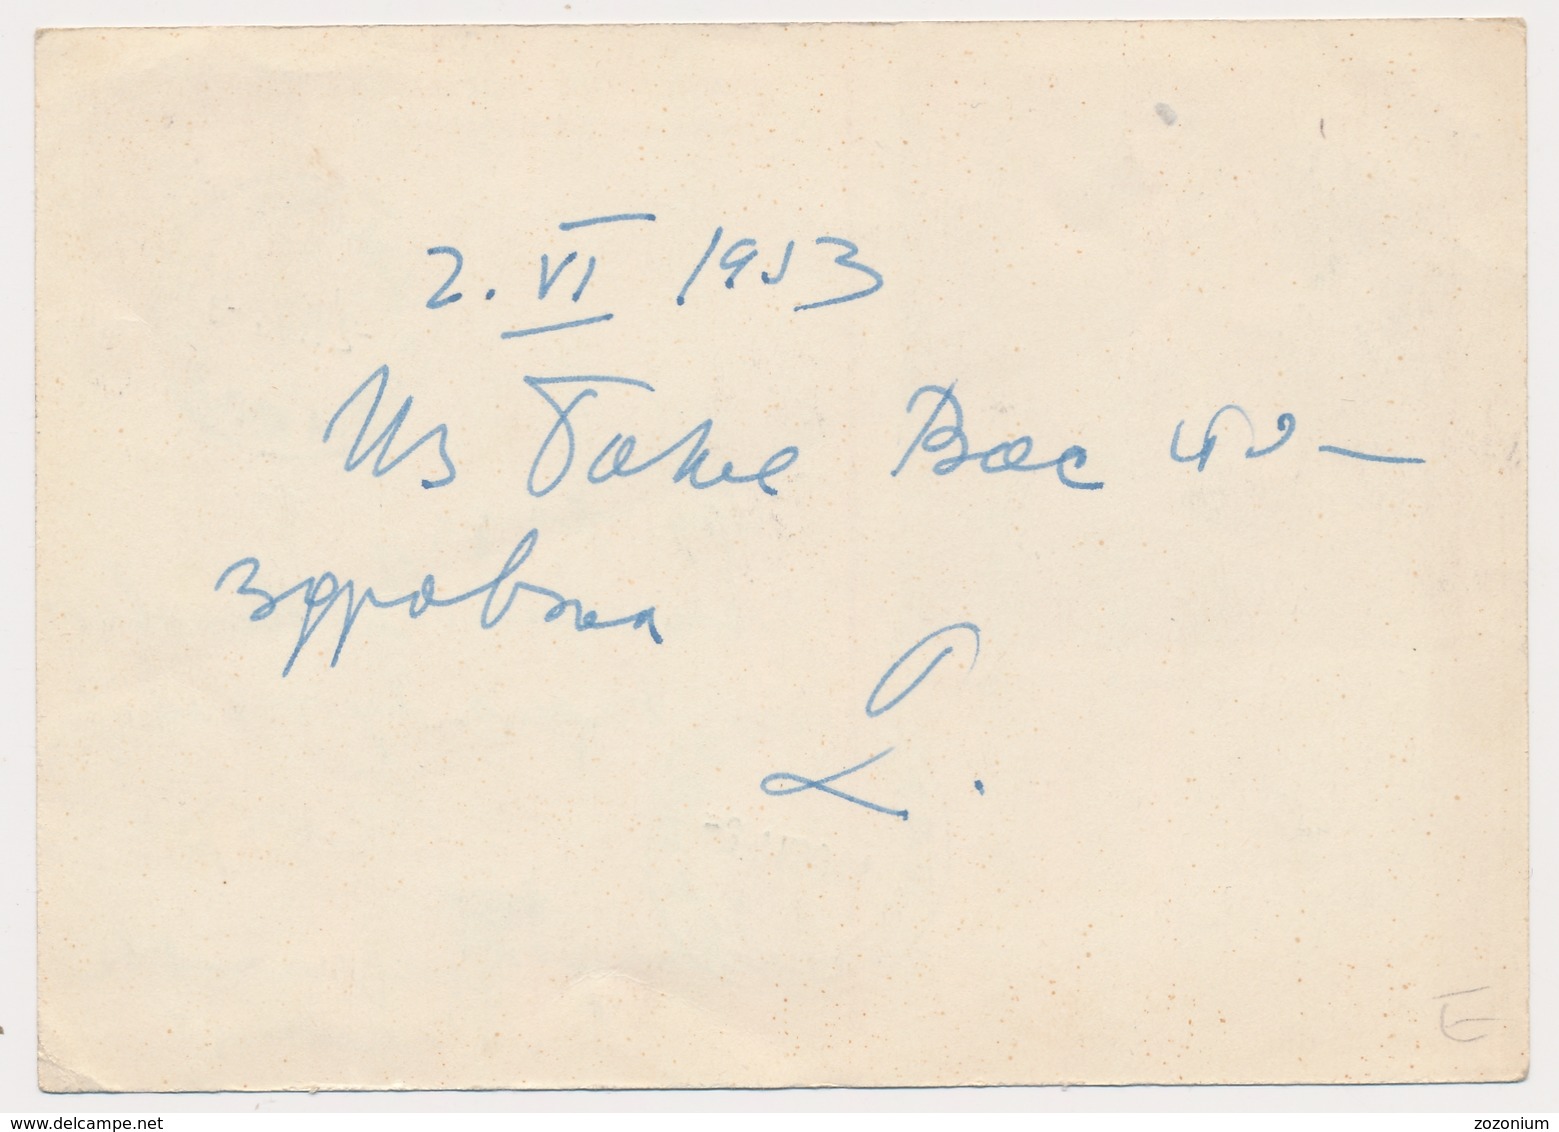 1953 Banja Koviljaca Jugoslavija Yugoslavia,dopisnica, Tito Stamp, Beograd - B.Koviljaca Vintage Old Postcard - Briefe U. Dokumente